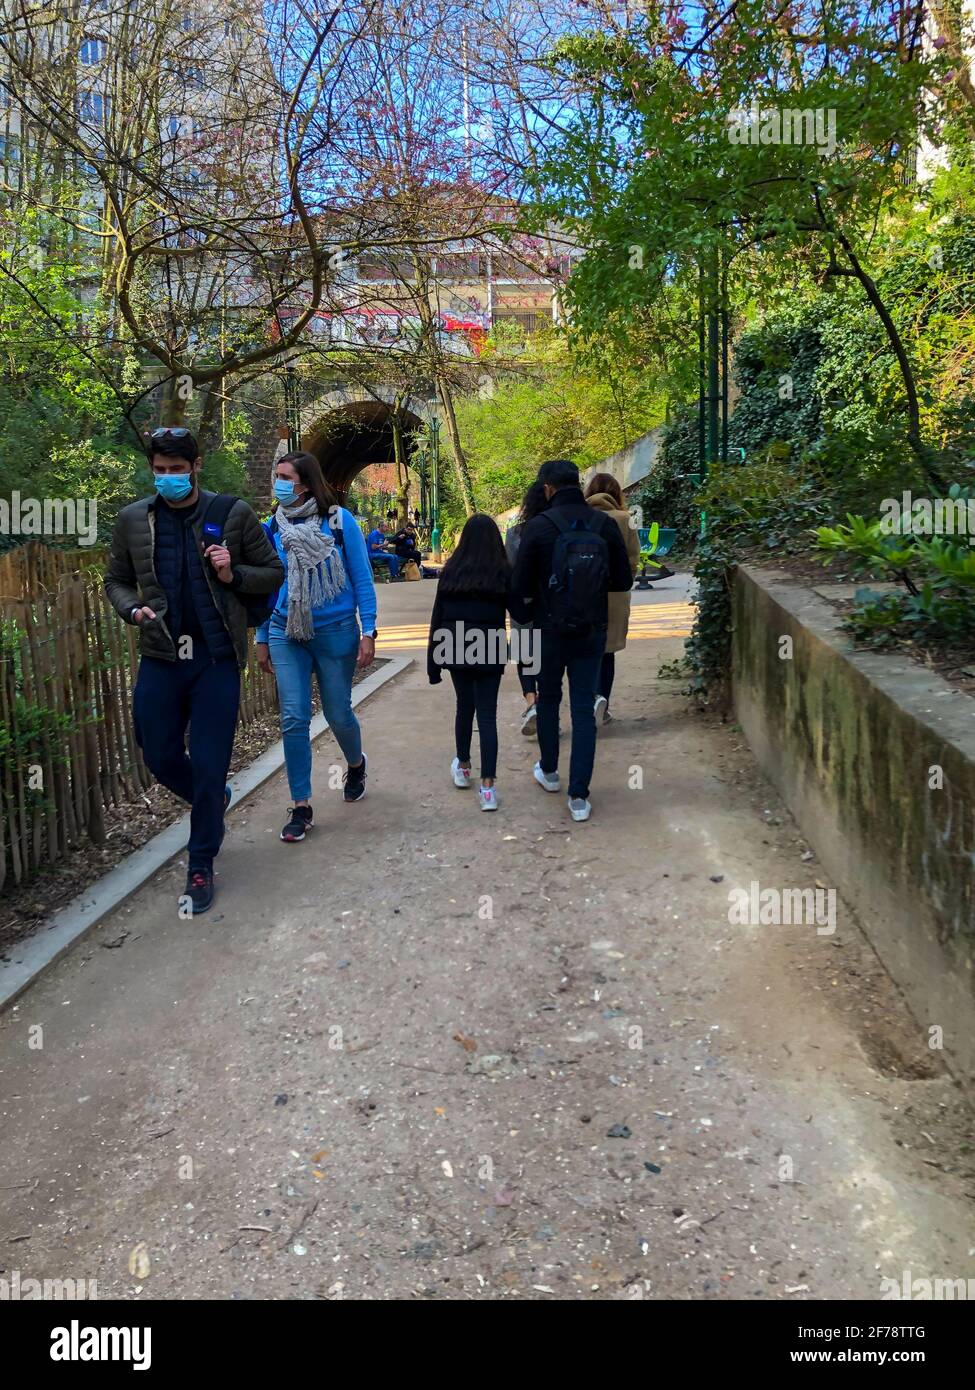 Paris, France, groupes de personnes à pied dans le Parc urbain, Promenade Plantée, ville de paris nature Banque D'Images